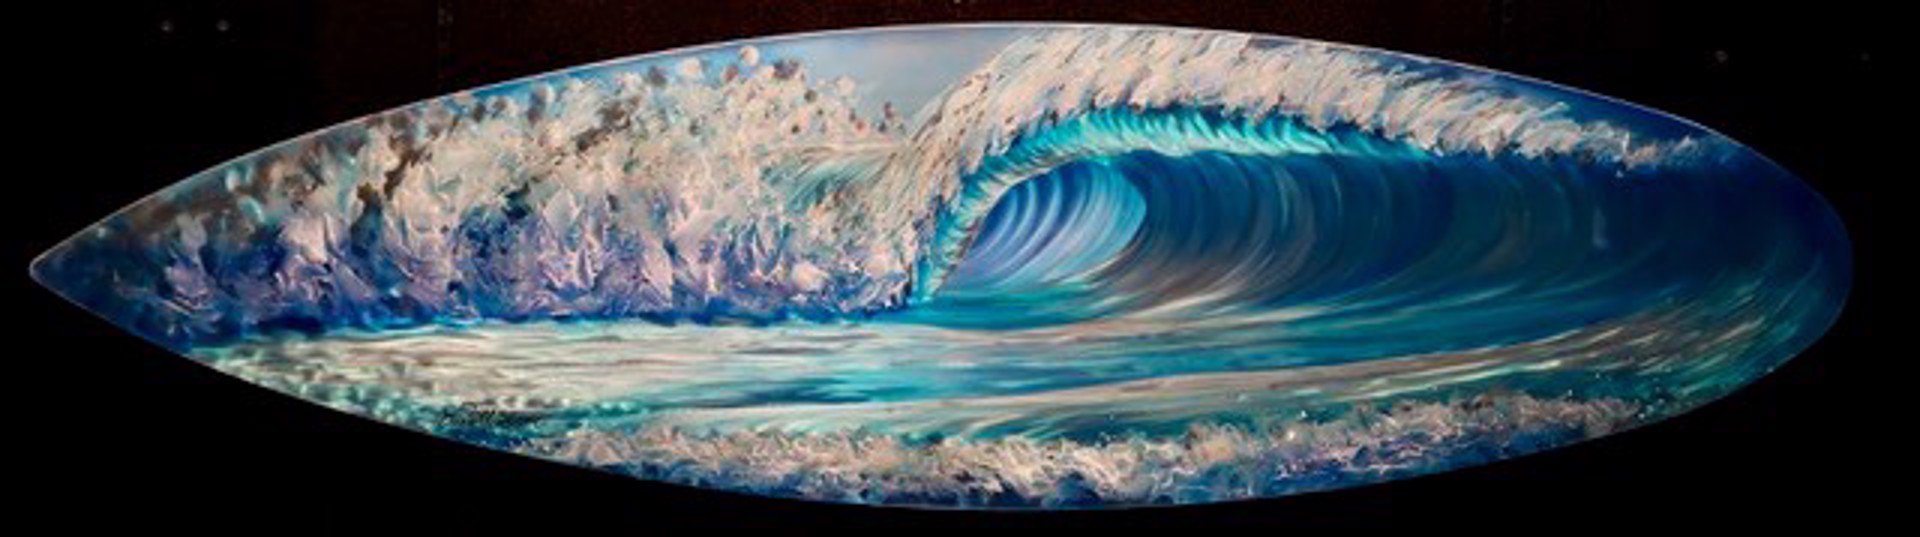 Surf Wave #57 IM2744 by Dennis Mathewson